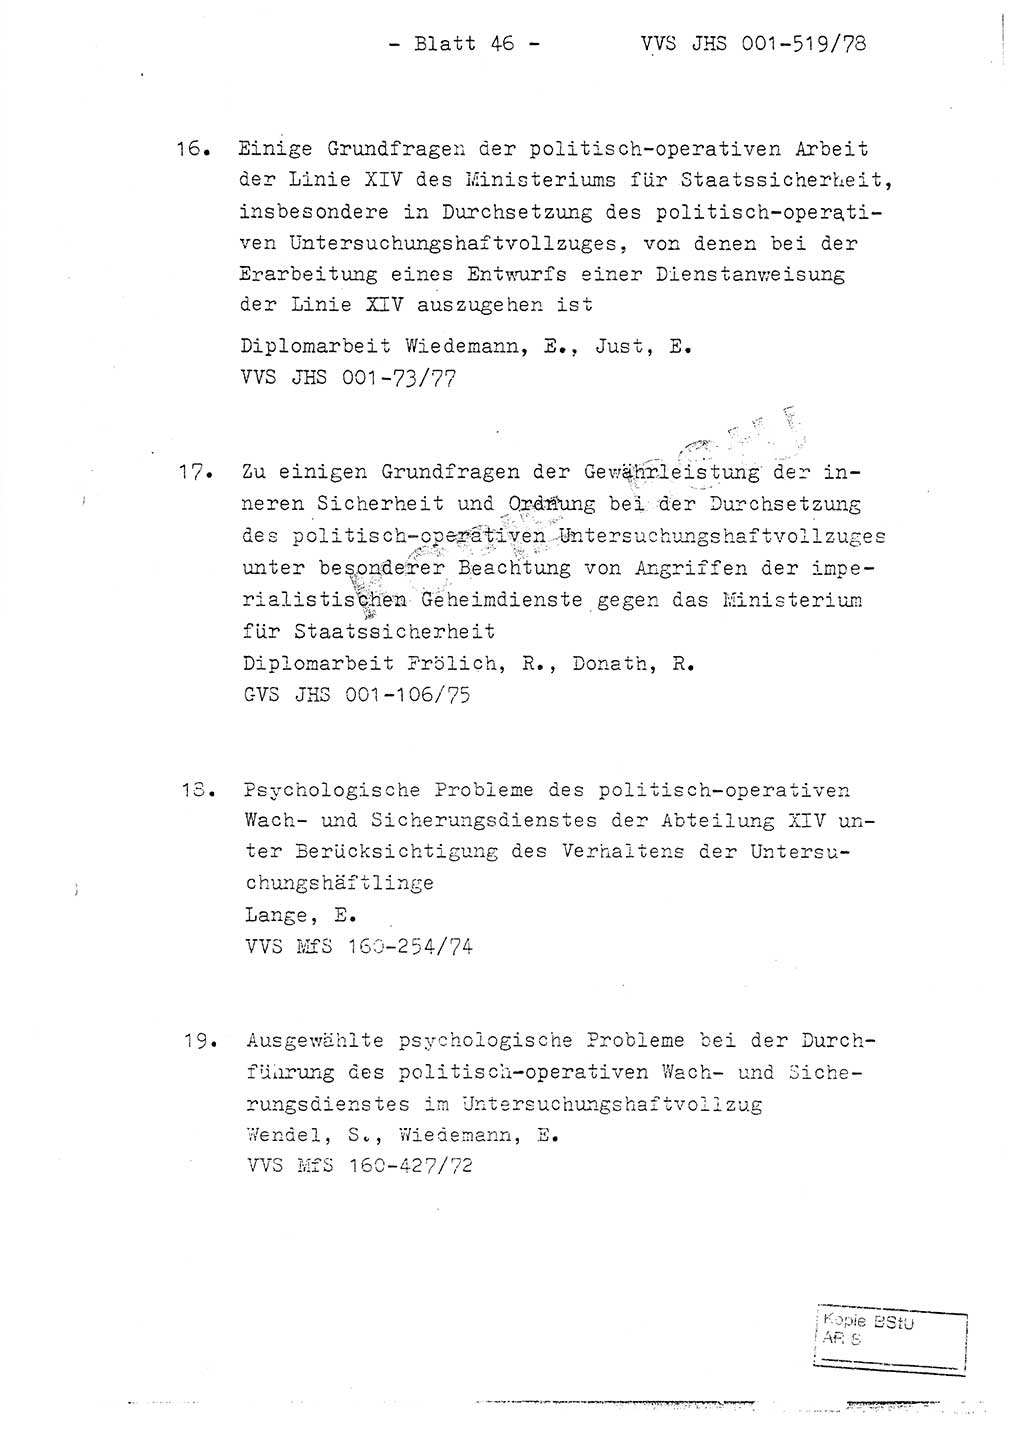 Fachschulabschlußarbeit Hauptmann Alfons Lützelberger (Abt. ⅩⅣ), Ministerium für Staatssicherheit (MfS) [Deutsche Demokratische Republik (DDR)], Juristische Hochschule (JHS), Vertrauliche Verschlußsache (VVS) 001-519/78, Potsdam 1978, Blatt 46 (FS-Abschl.-Arb. MfS DDR JHS VVS 001-519/78 1978, Bl. 46)